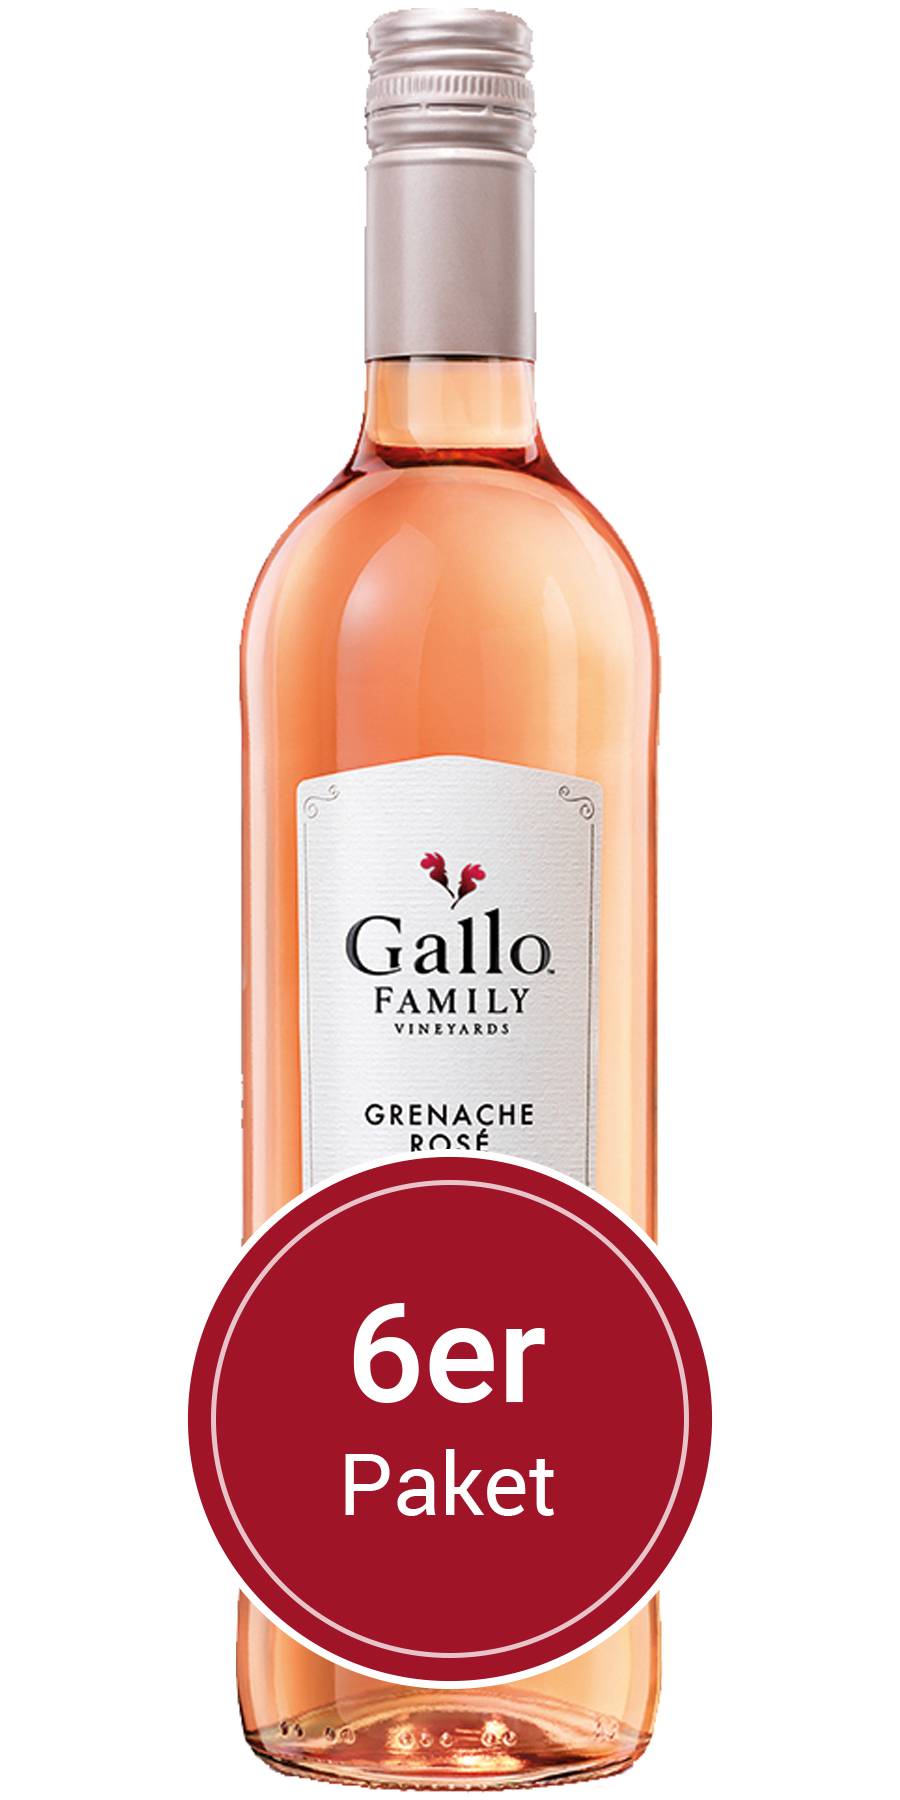 Grenache Gallo Vineyards, Flaschen Kalifornien Rose, Family l 6 0,75